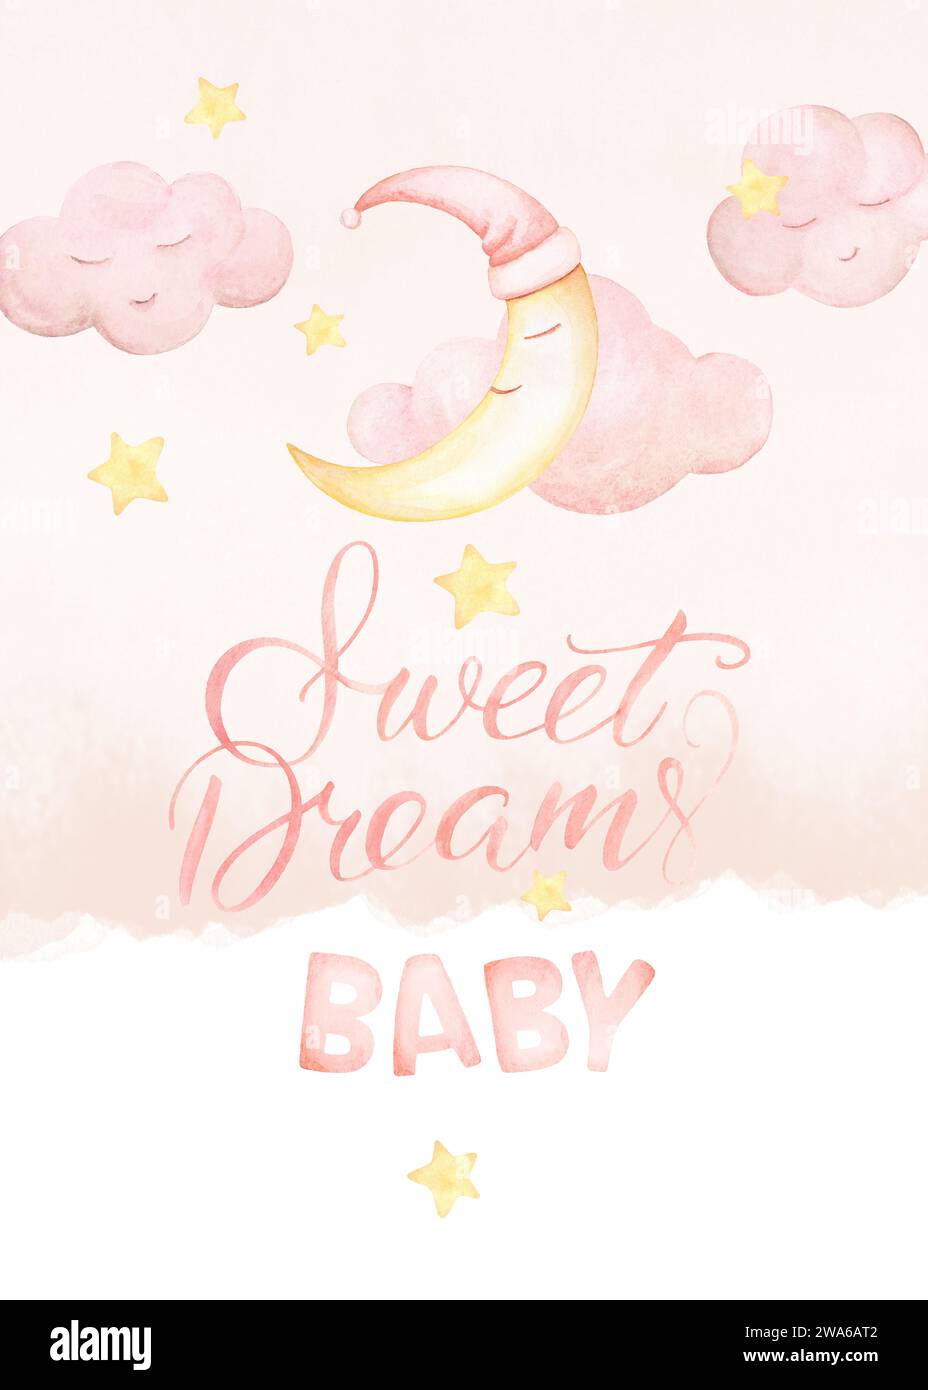 Scritta Sweet Dreams Baby. Illustrazioni di Watercolor Night Sky Moon. Poster baby Girl Nursery. Vivaio a tema Sky, colori rosa delicati Foto Stock